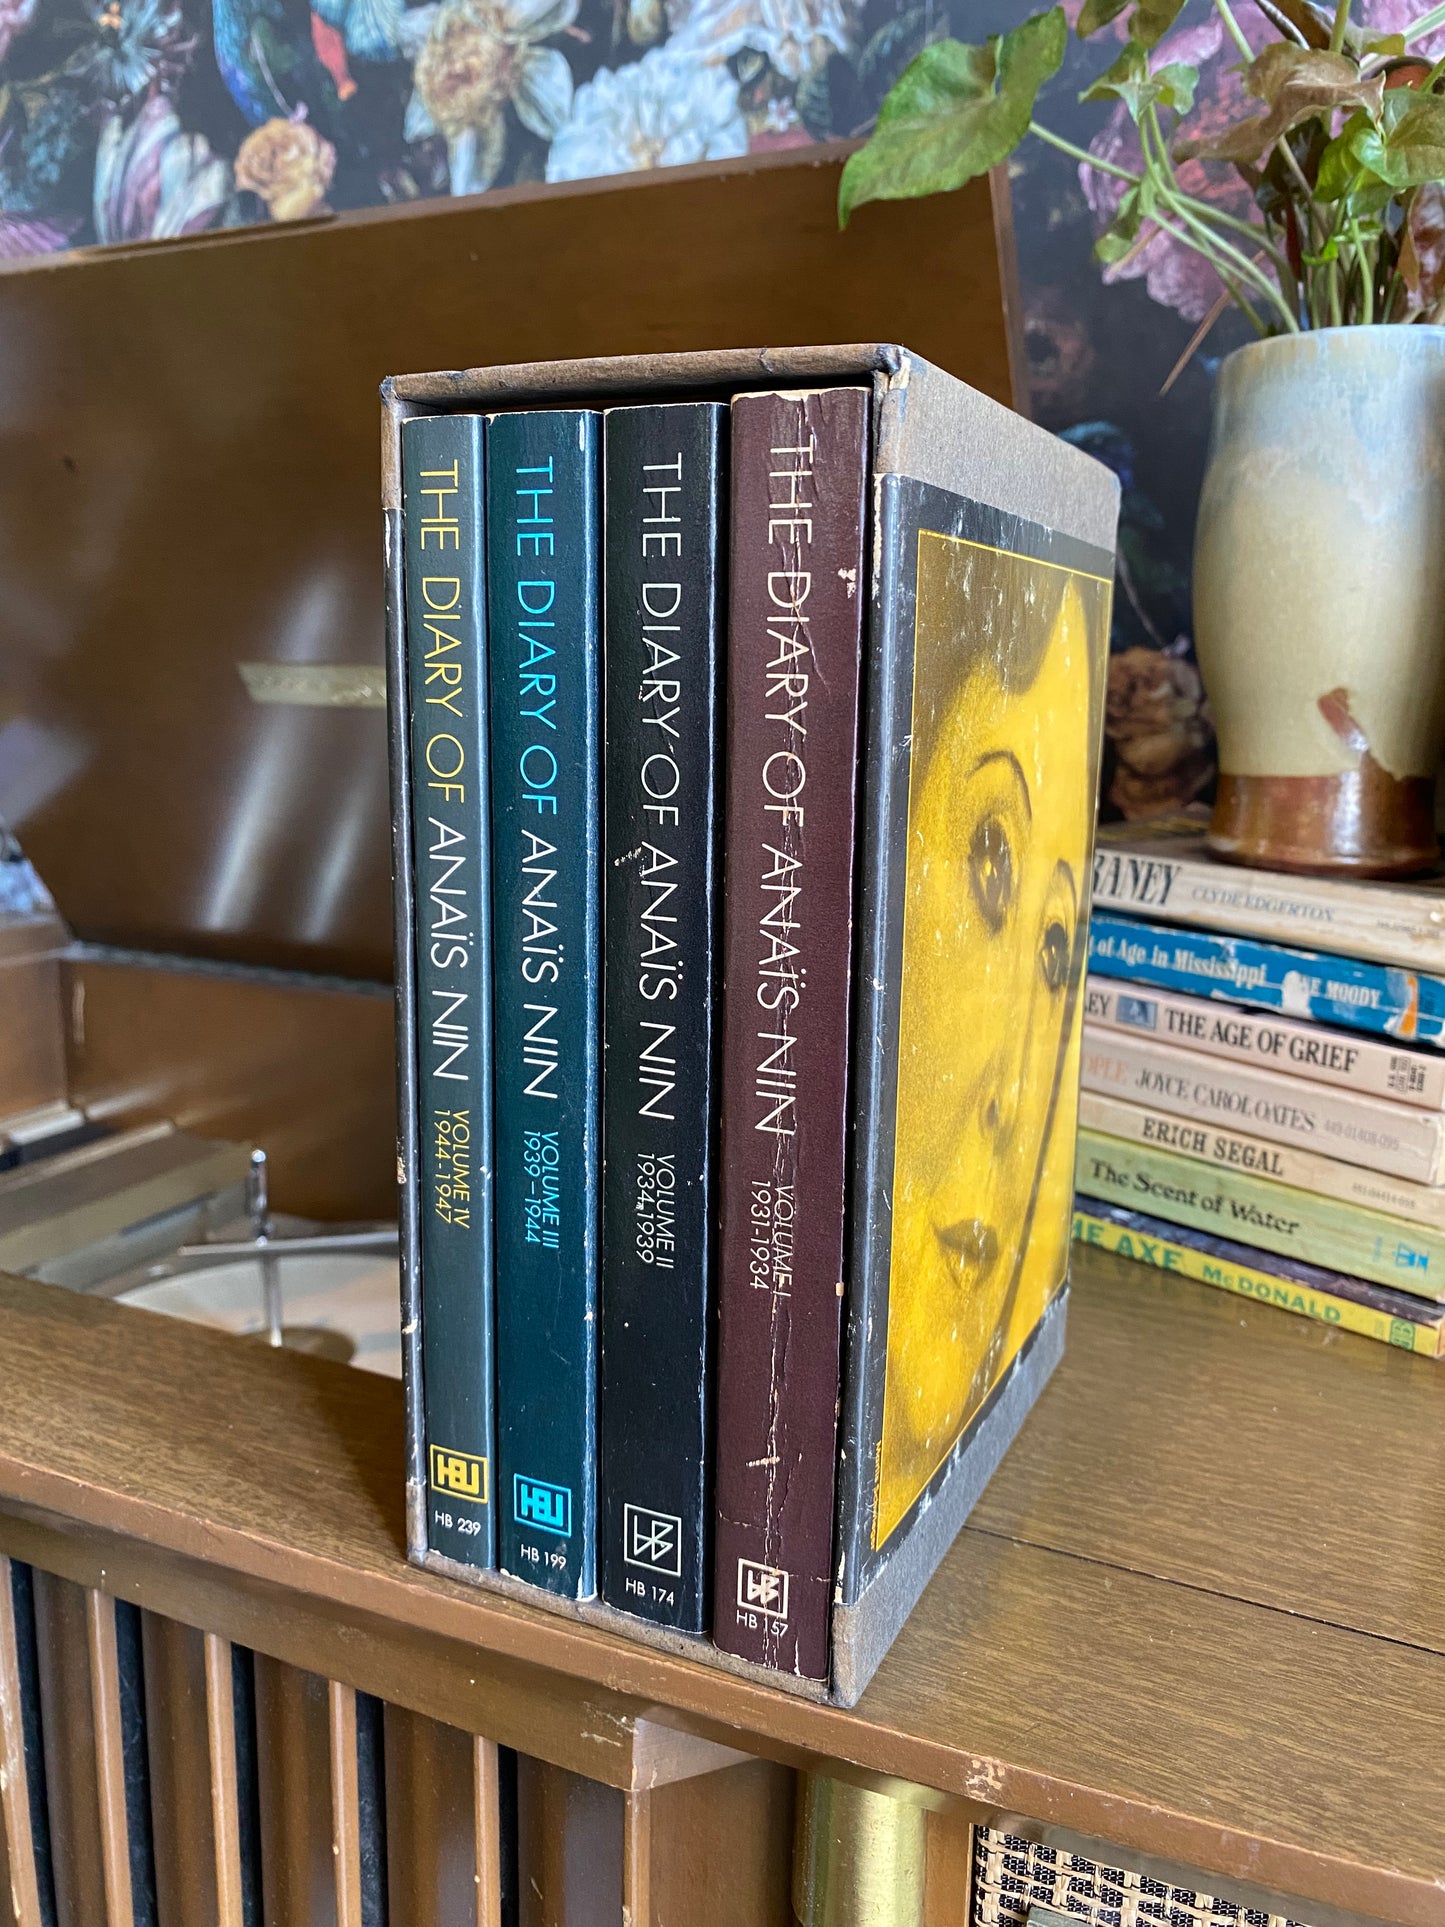 Diary of Anais Nin Box Set (4 Books)